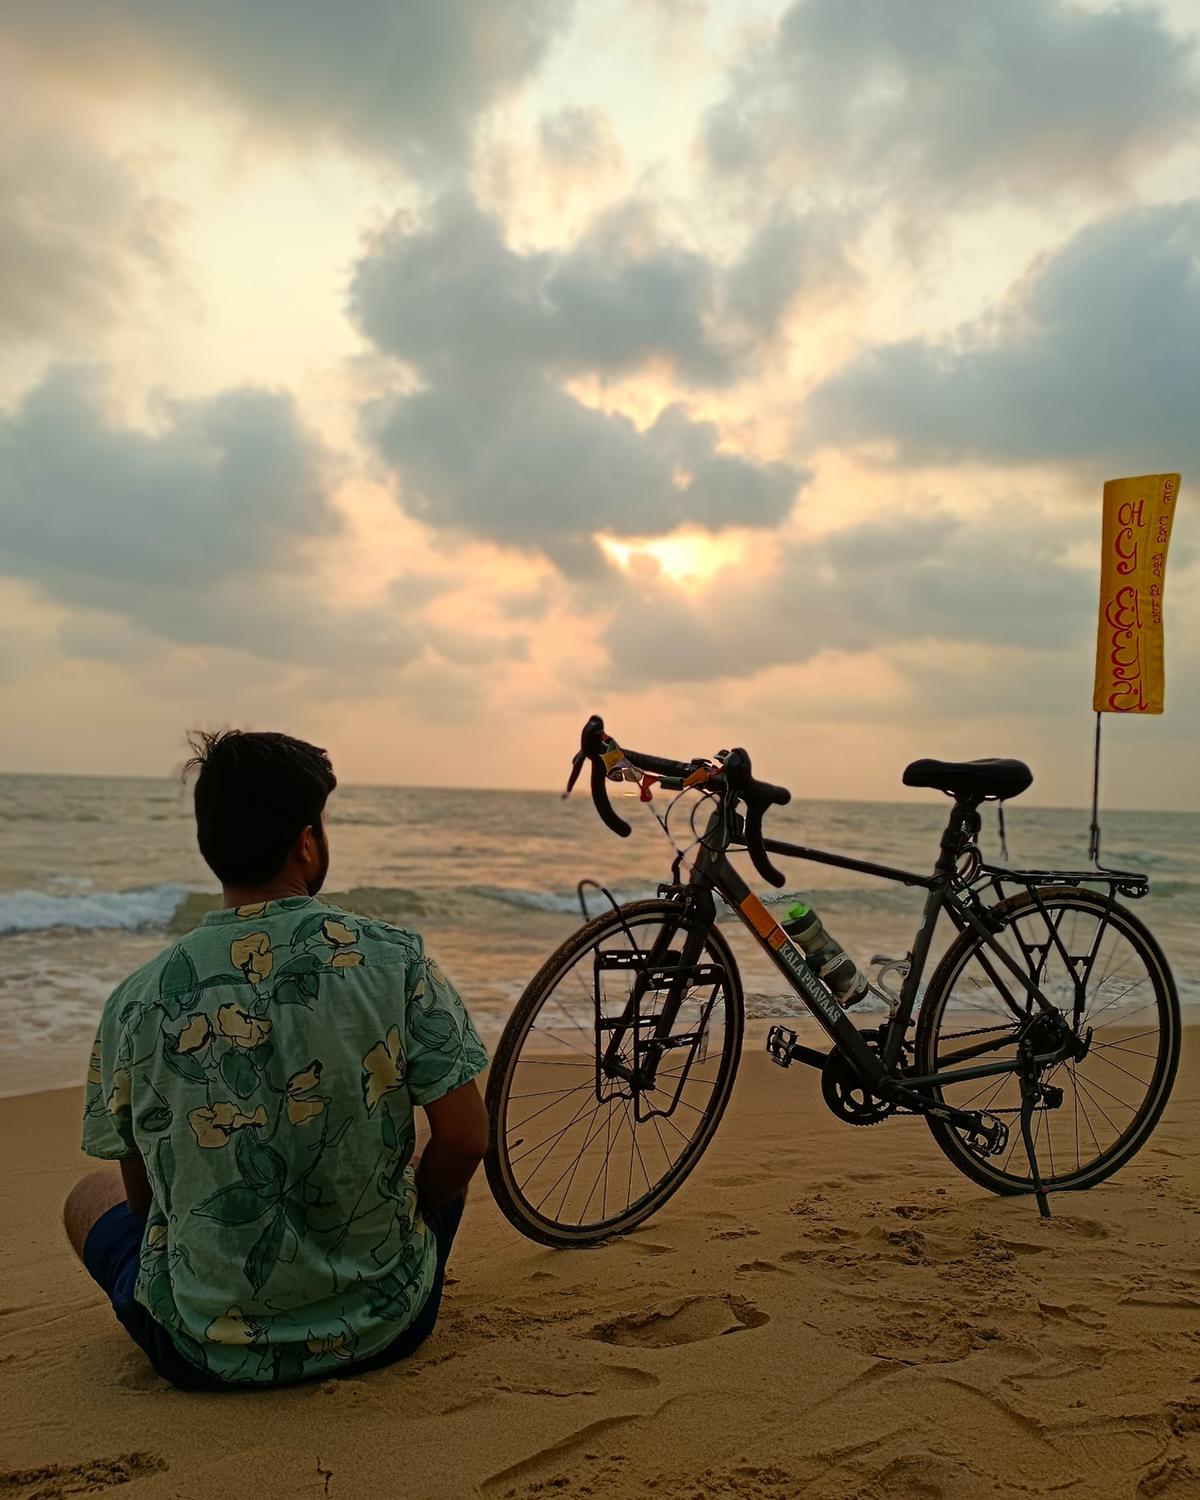 L'artiste Pratik Jadhav, basé à Mumbai, qui fait un tour à vélo à travers l'Inde pour documenter les formes d'art indien